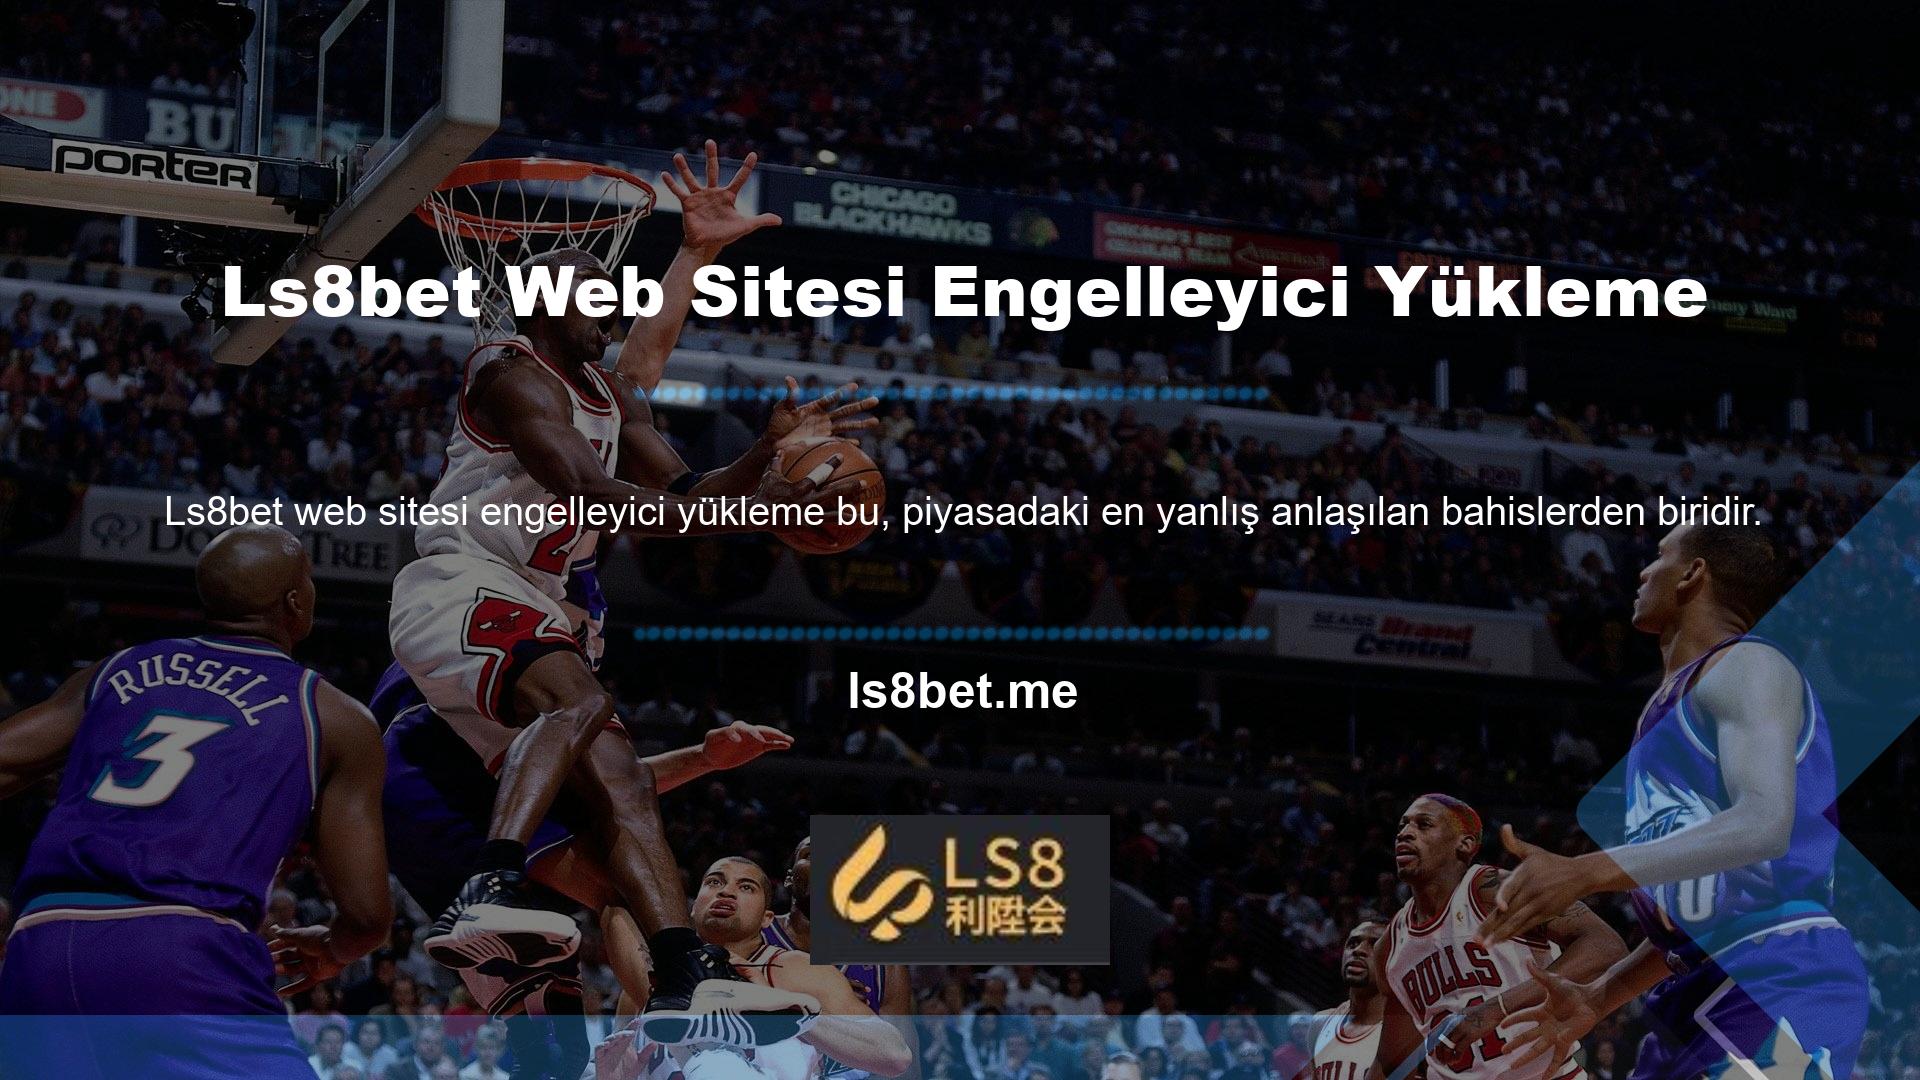 Ls8bet web sitesi engelleyicisini yüklemek kurulum sayfasını kapatır mı? Hayır, Ls8bet web sitesini kapatma kararı yalnızca Türkiye'de alınmıştır